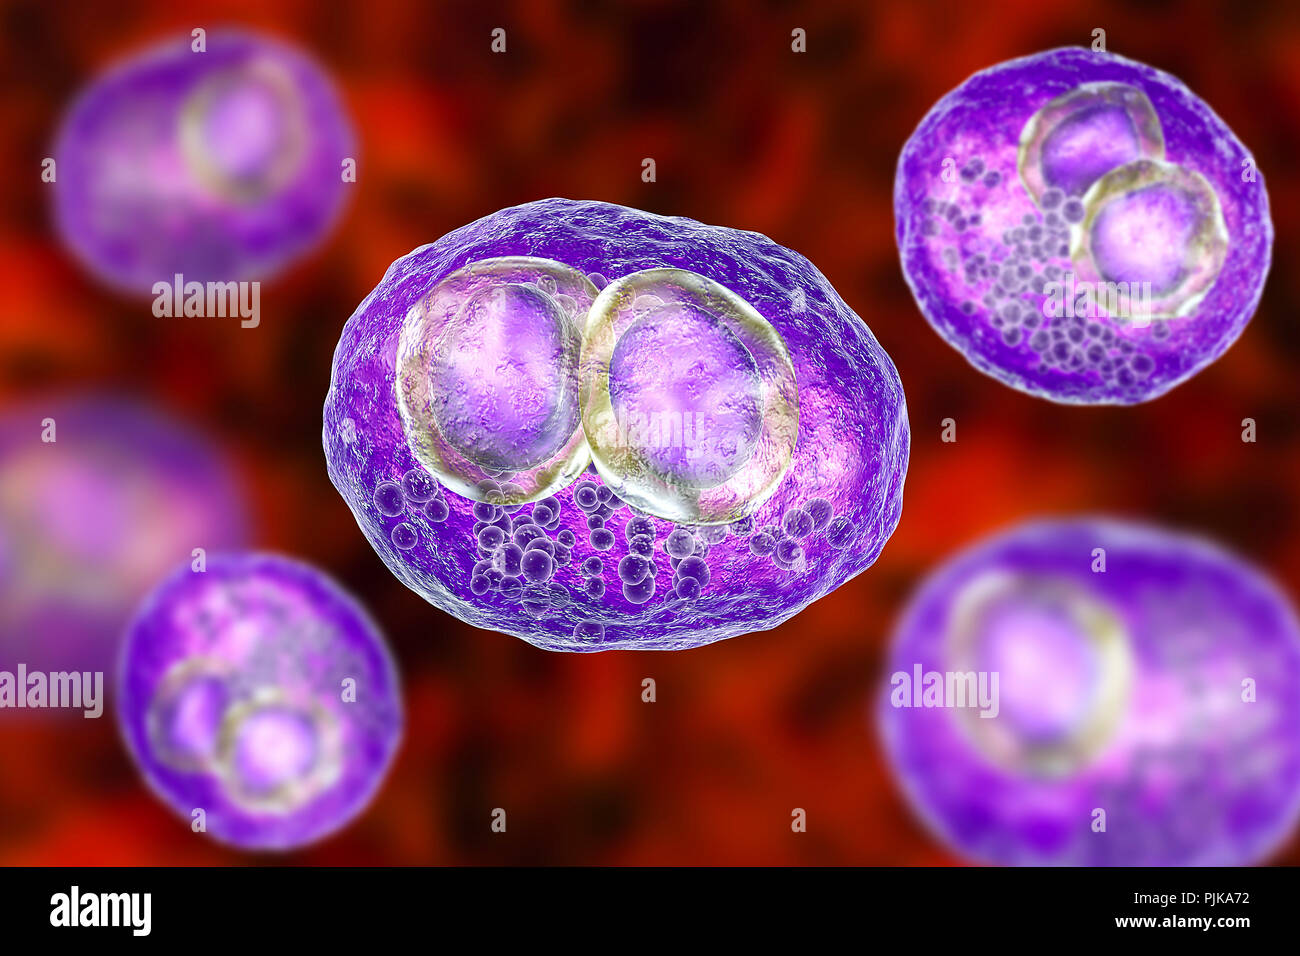 Infection à cytomégalovirus. Illustration d'ordinateur des cellules montrant l'inclusion inclusions cytomégaliques maladie, un symptôme d'infection à cytomégalovirus. Cytomeg Banque D'Images